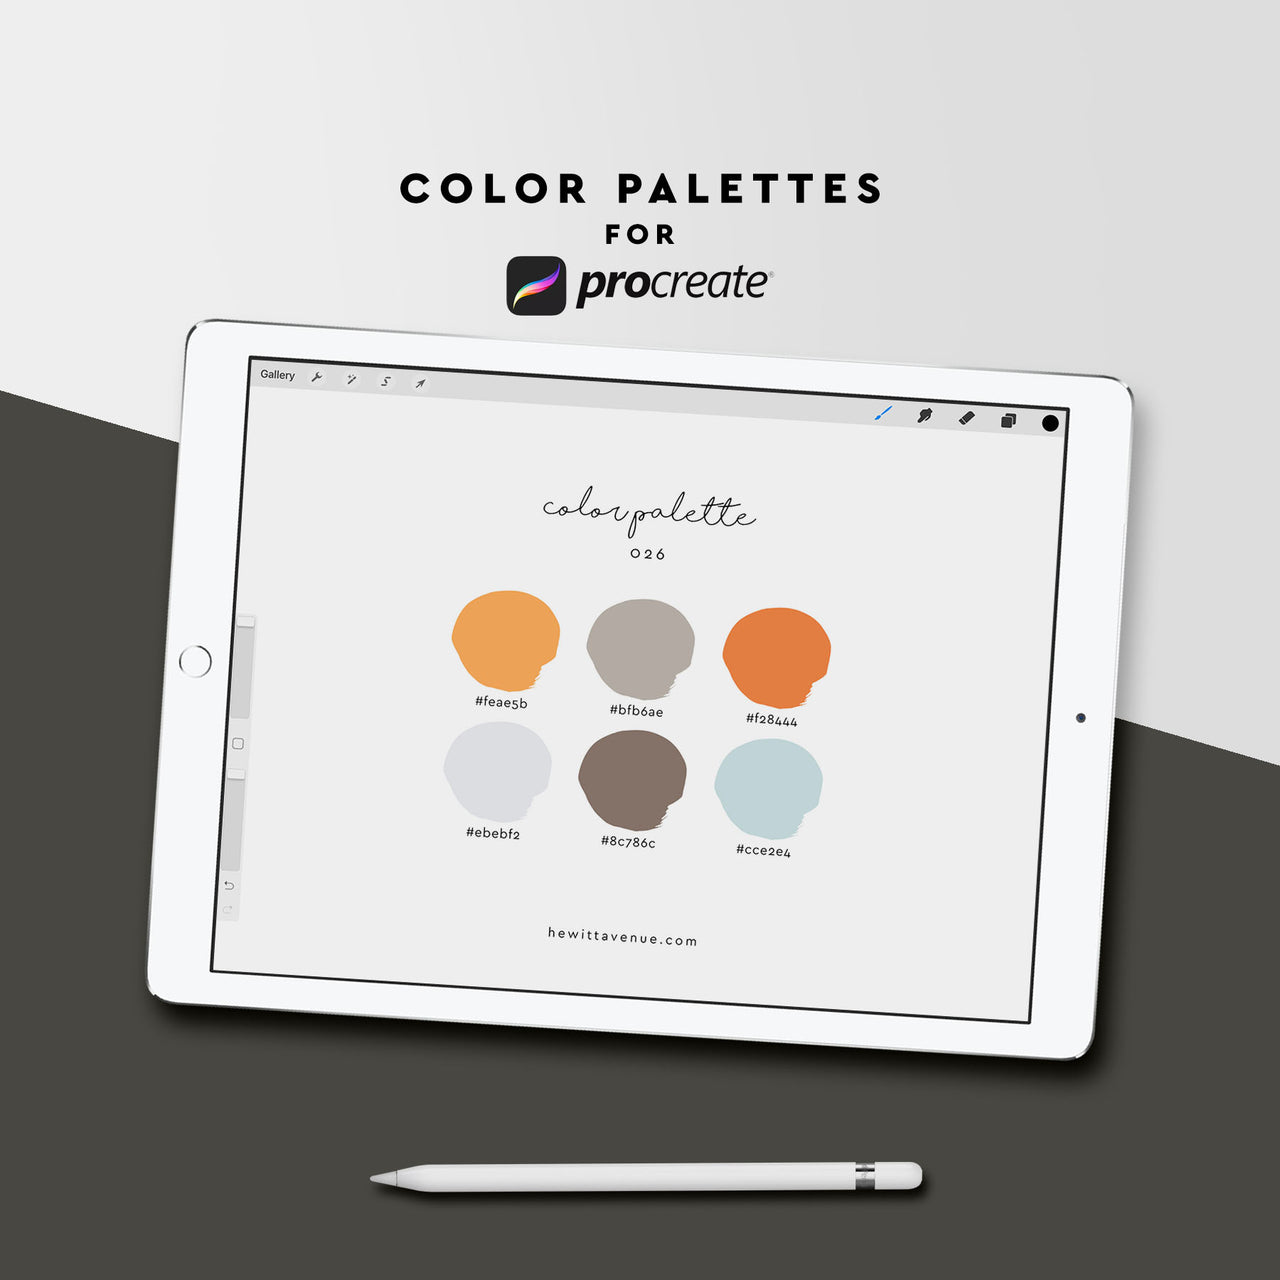 Color Palette 026 - Hewitt Avenue